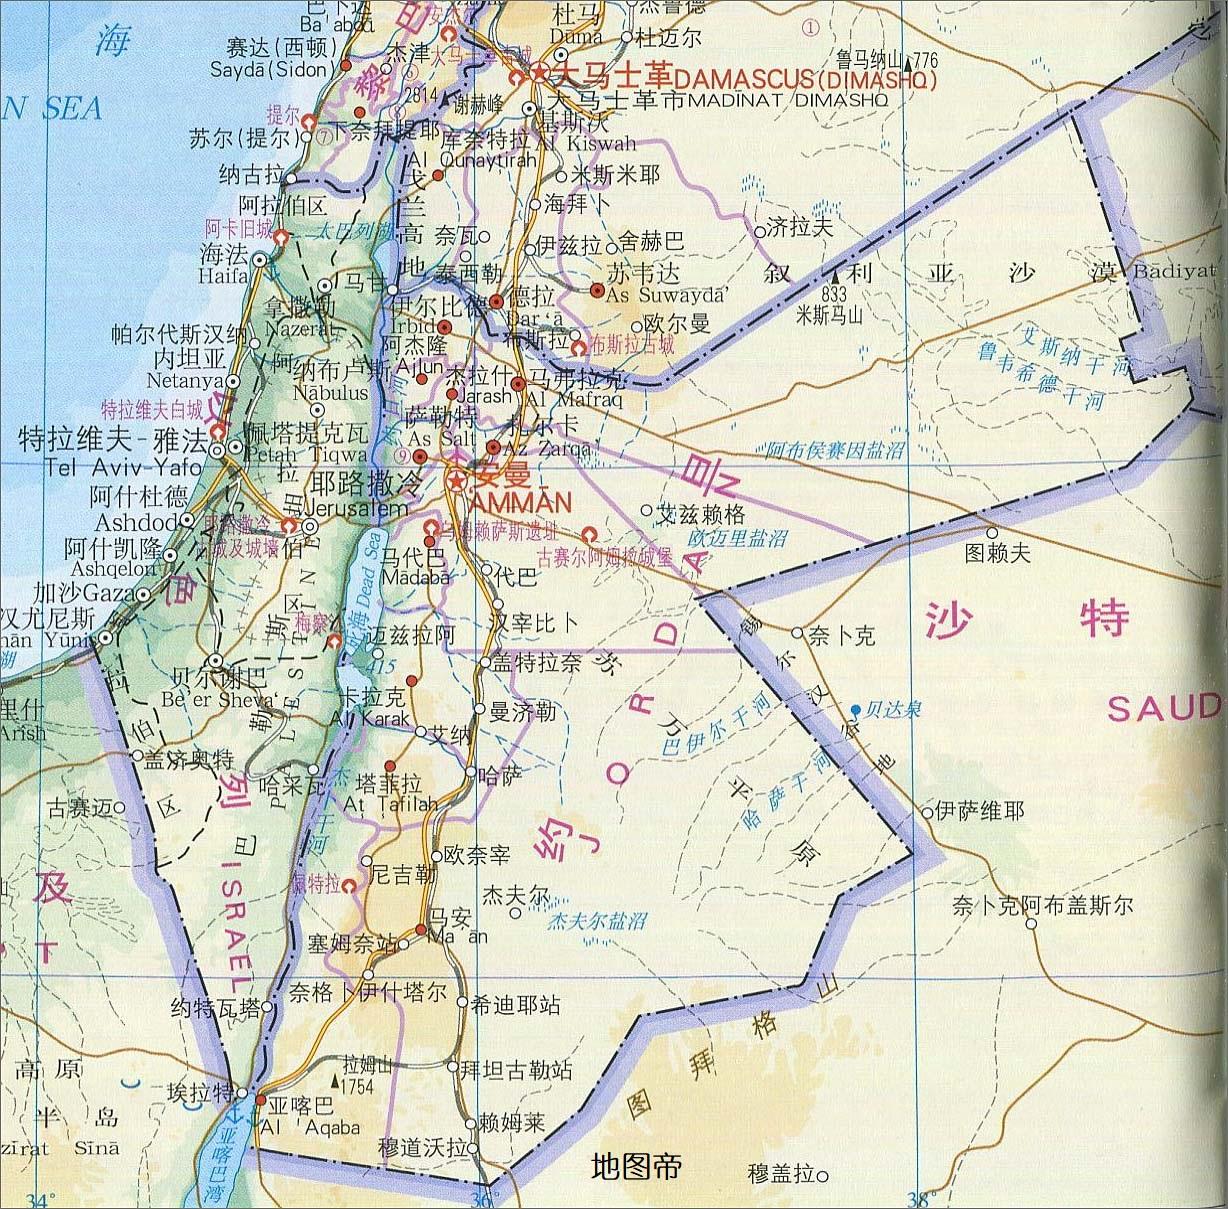 以色列地图,巴勒斯坦地图,黎巴嫩地图中文版全图 - 世界地图全图 - 地理教师网